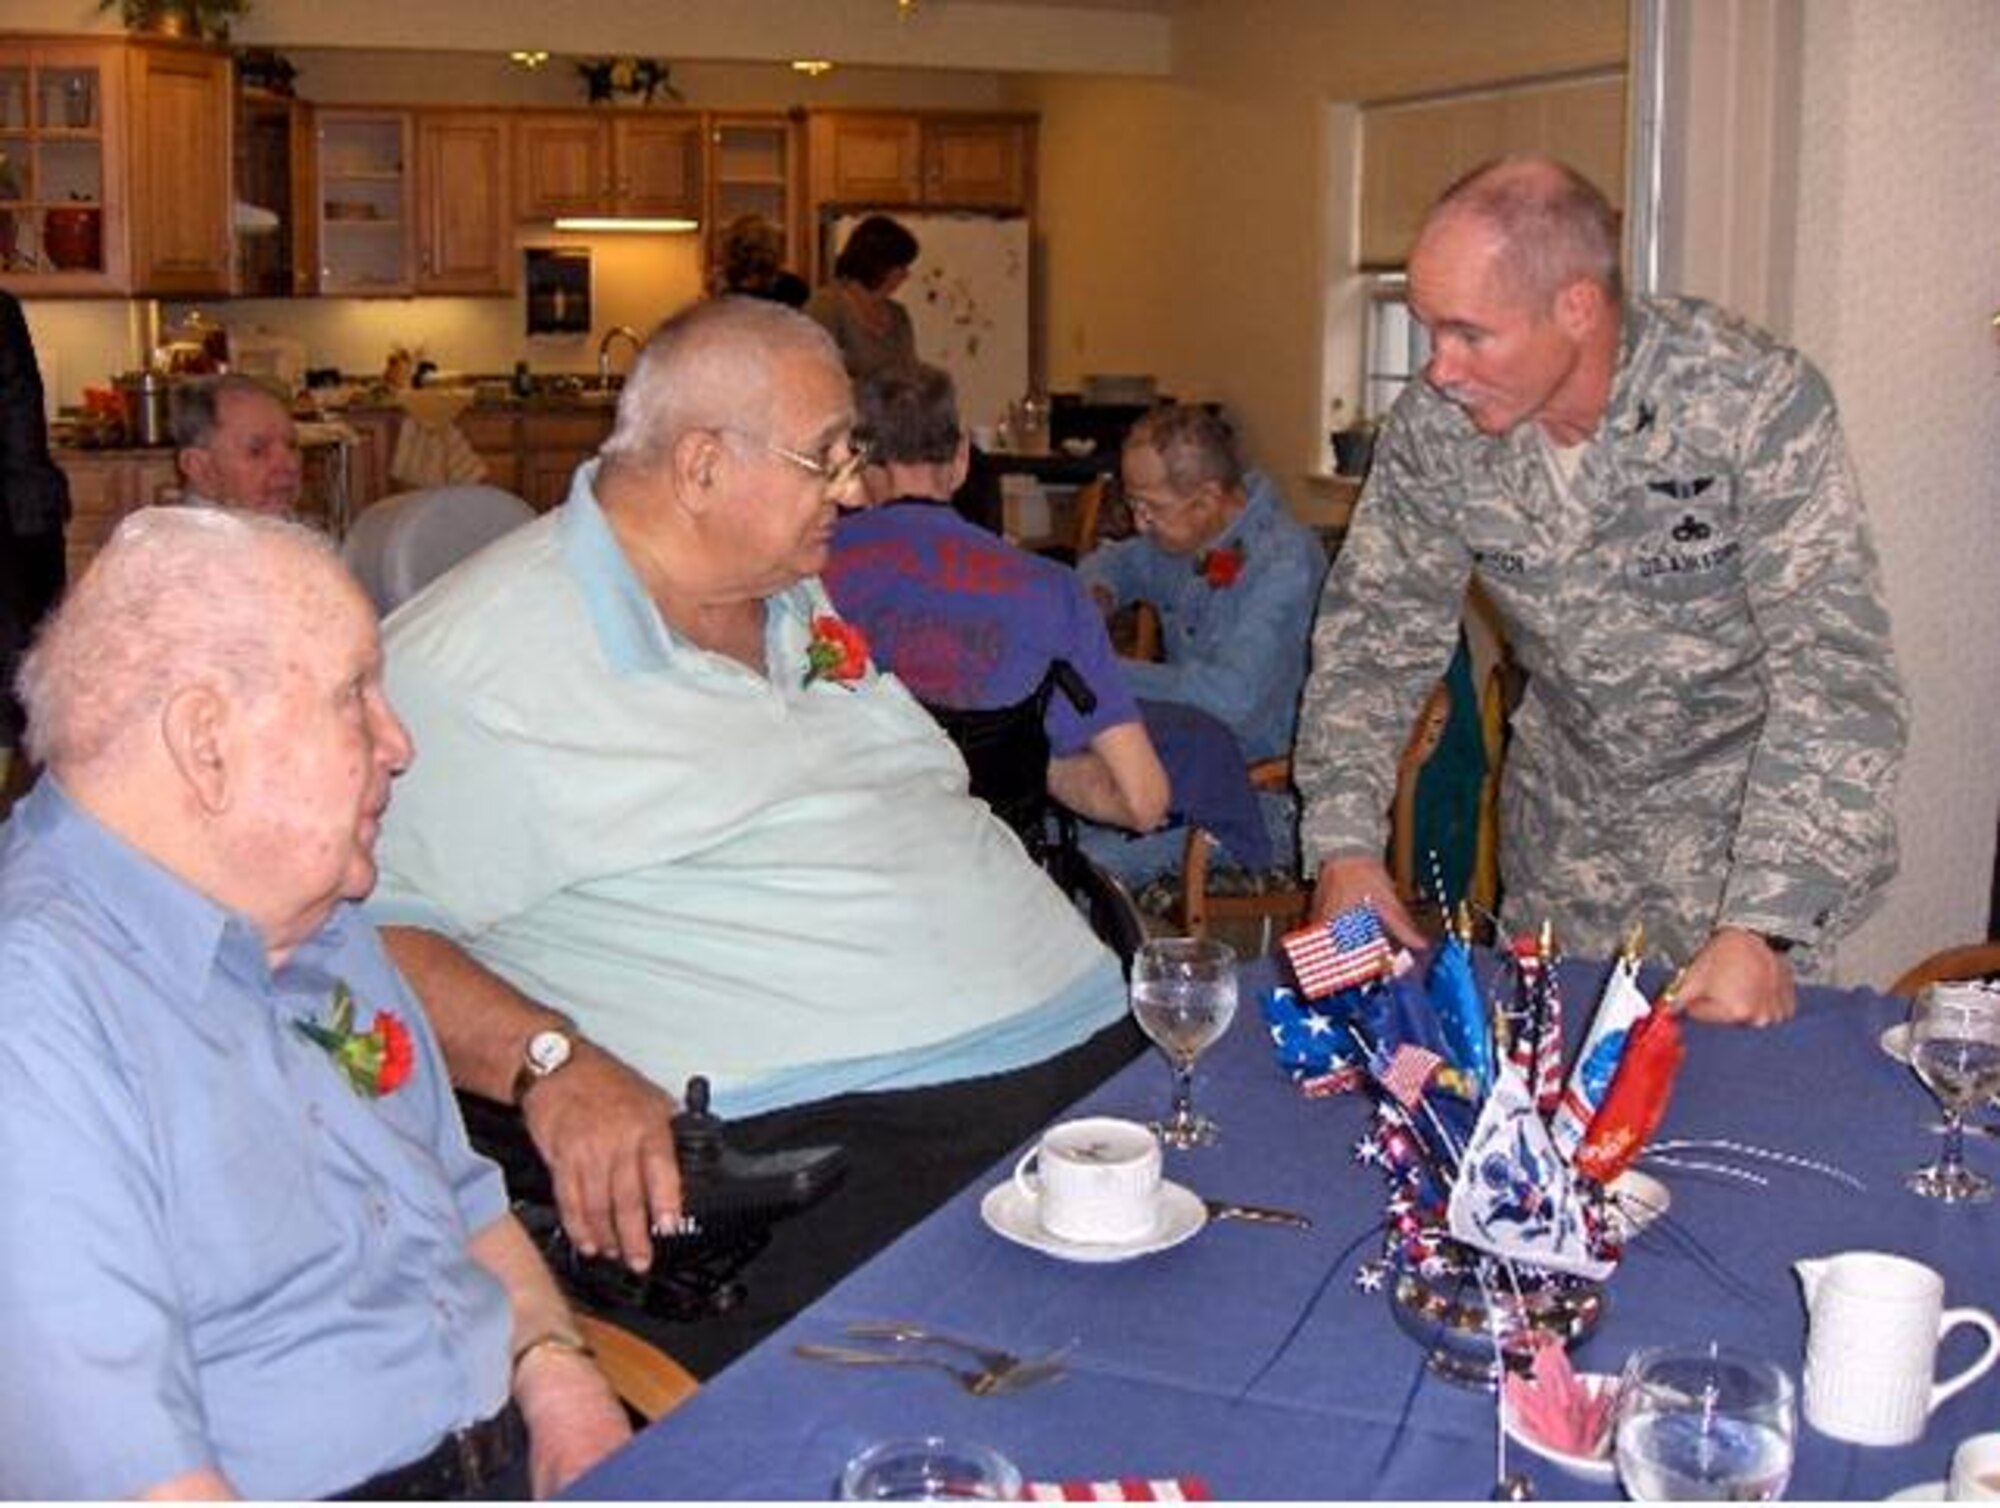 Veterans Part of 104th Family
